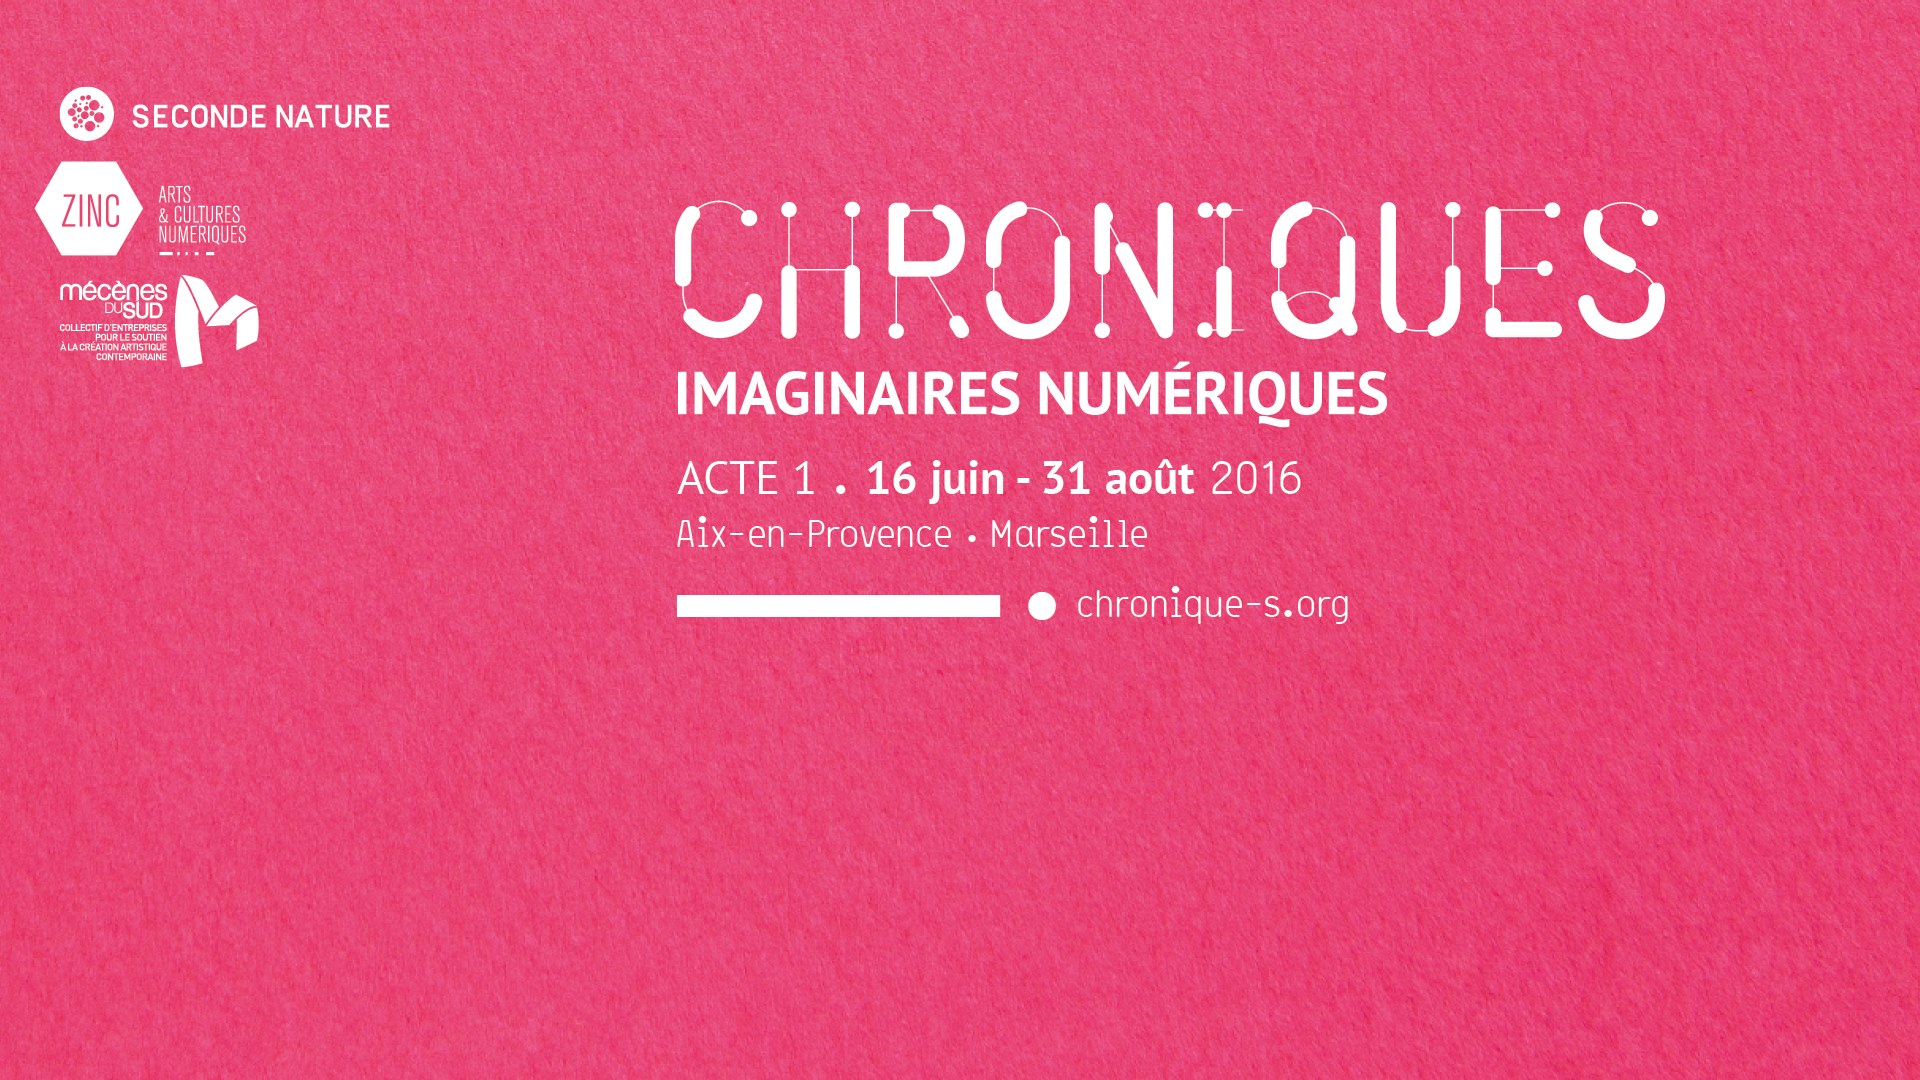 Chroniques, Imaginaires Numériques, 1st act from June 16 to August 31 2016.